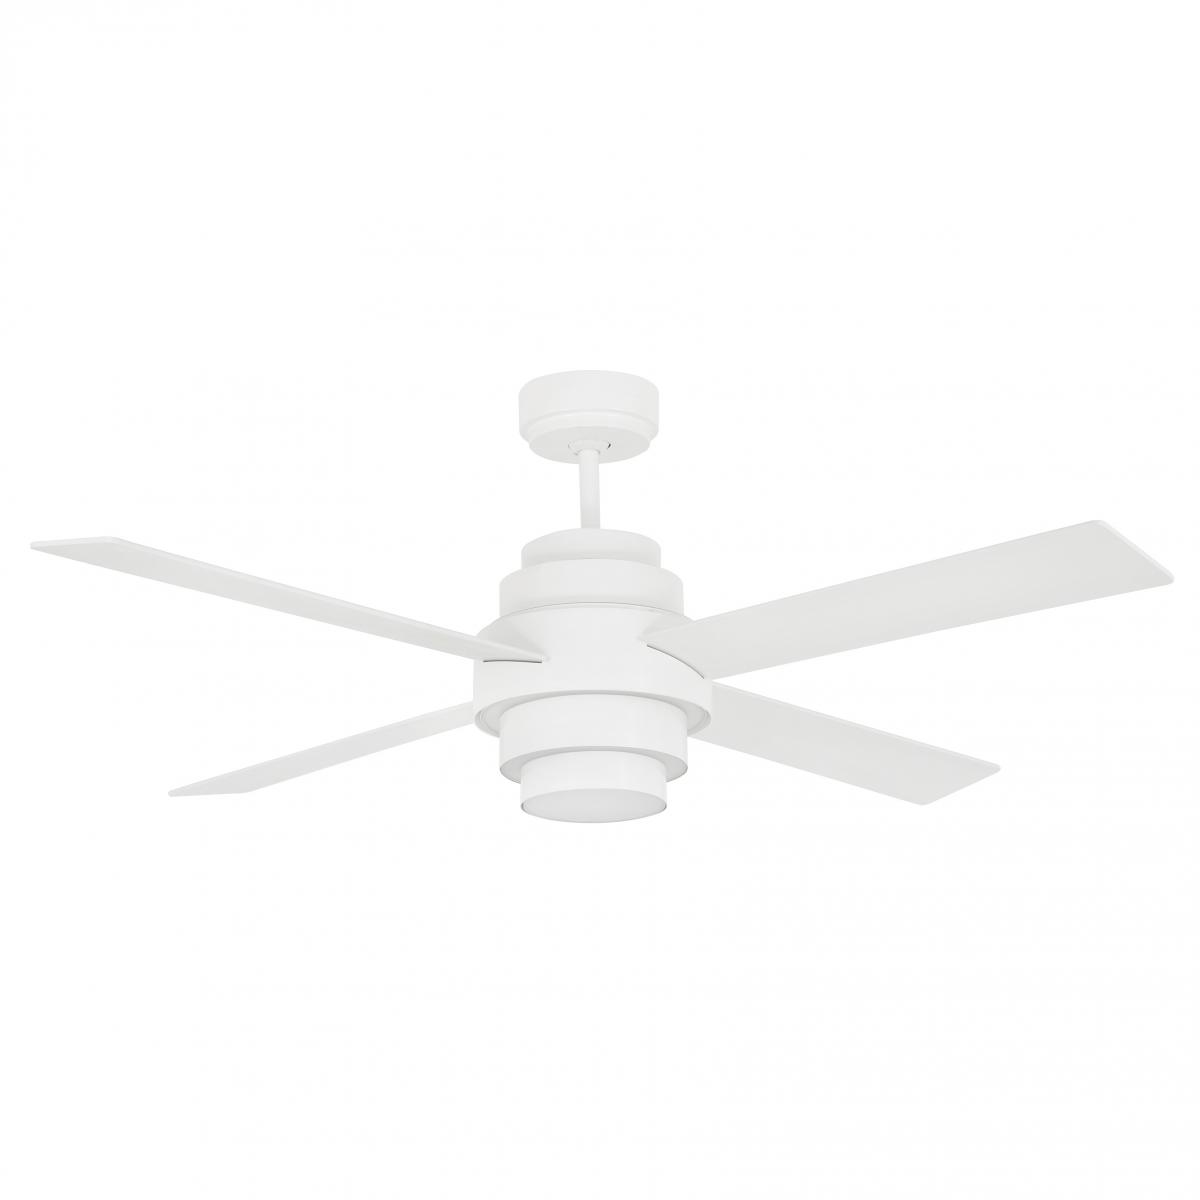 Белый потолочный вентилятор Disc Fan